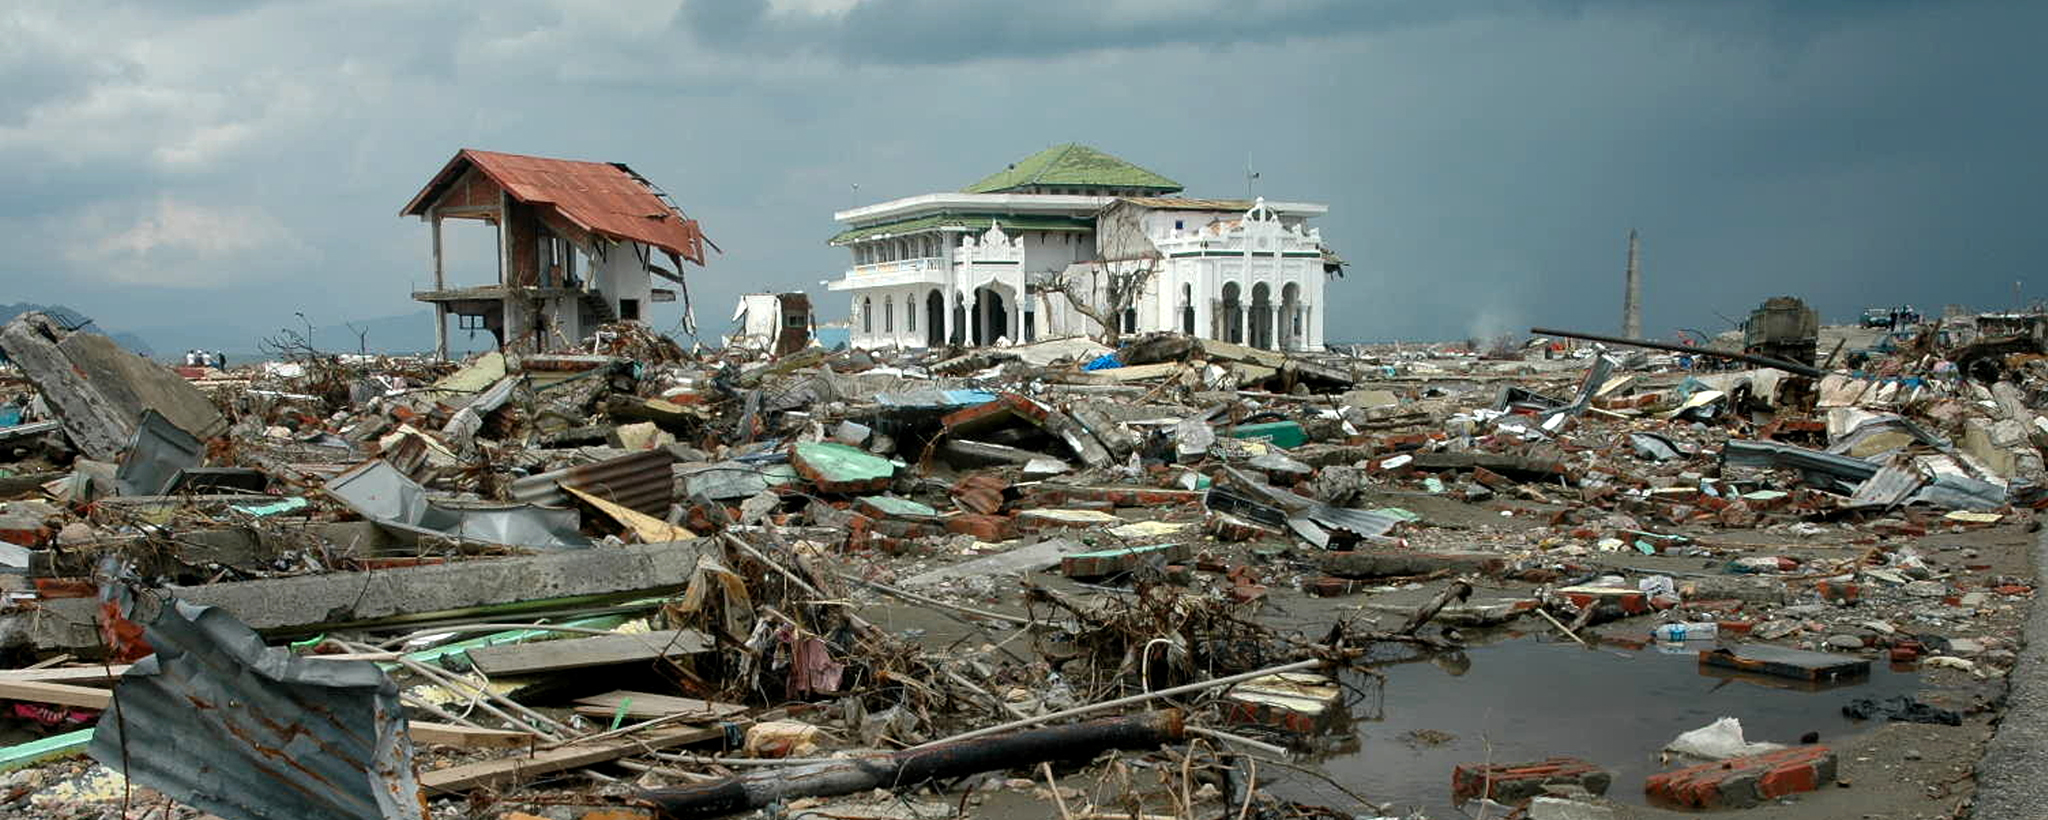 Землетрясение в тайланде новости. Суматра ЦУНАМИ 2004 волна. Суматра 2004 землетрясение и ЦУНАМИ. ЦУНАМИ В Индонезии 2006.